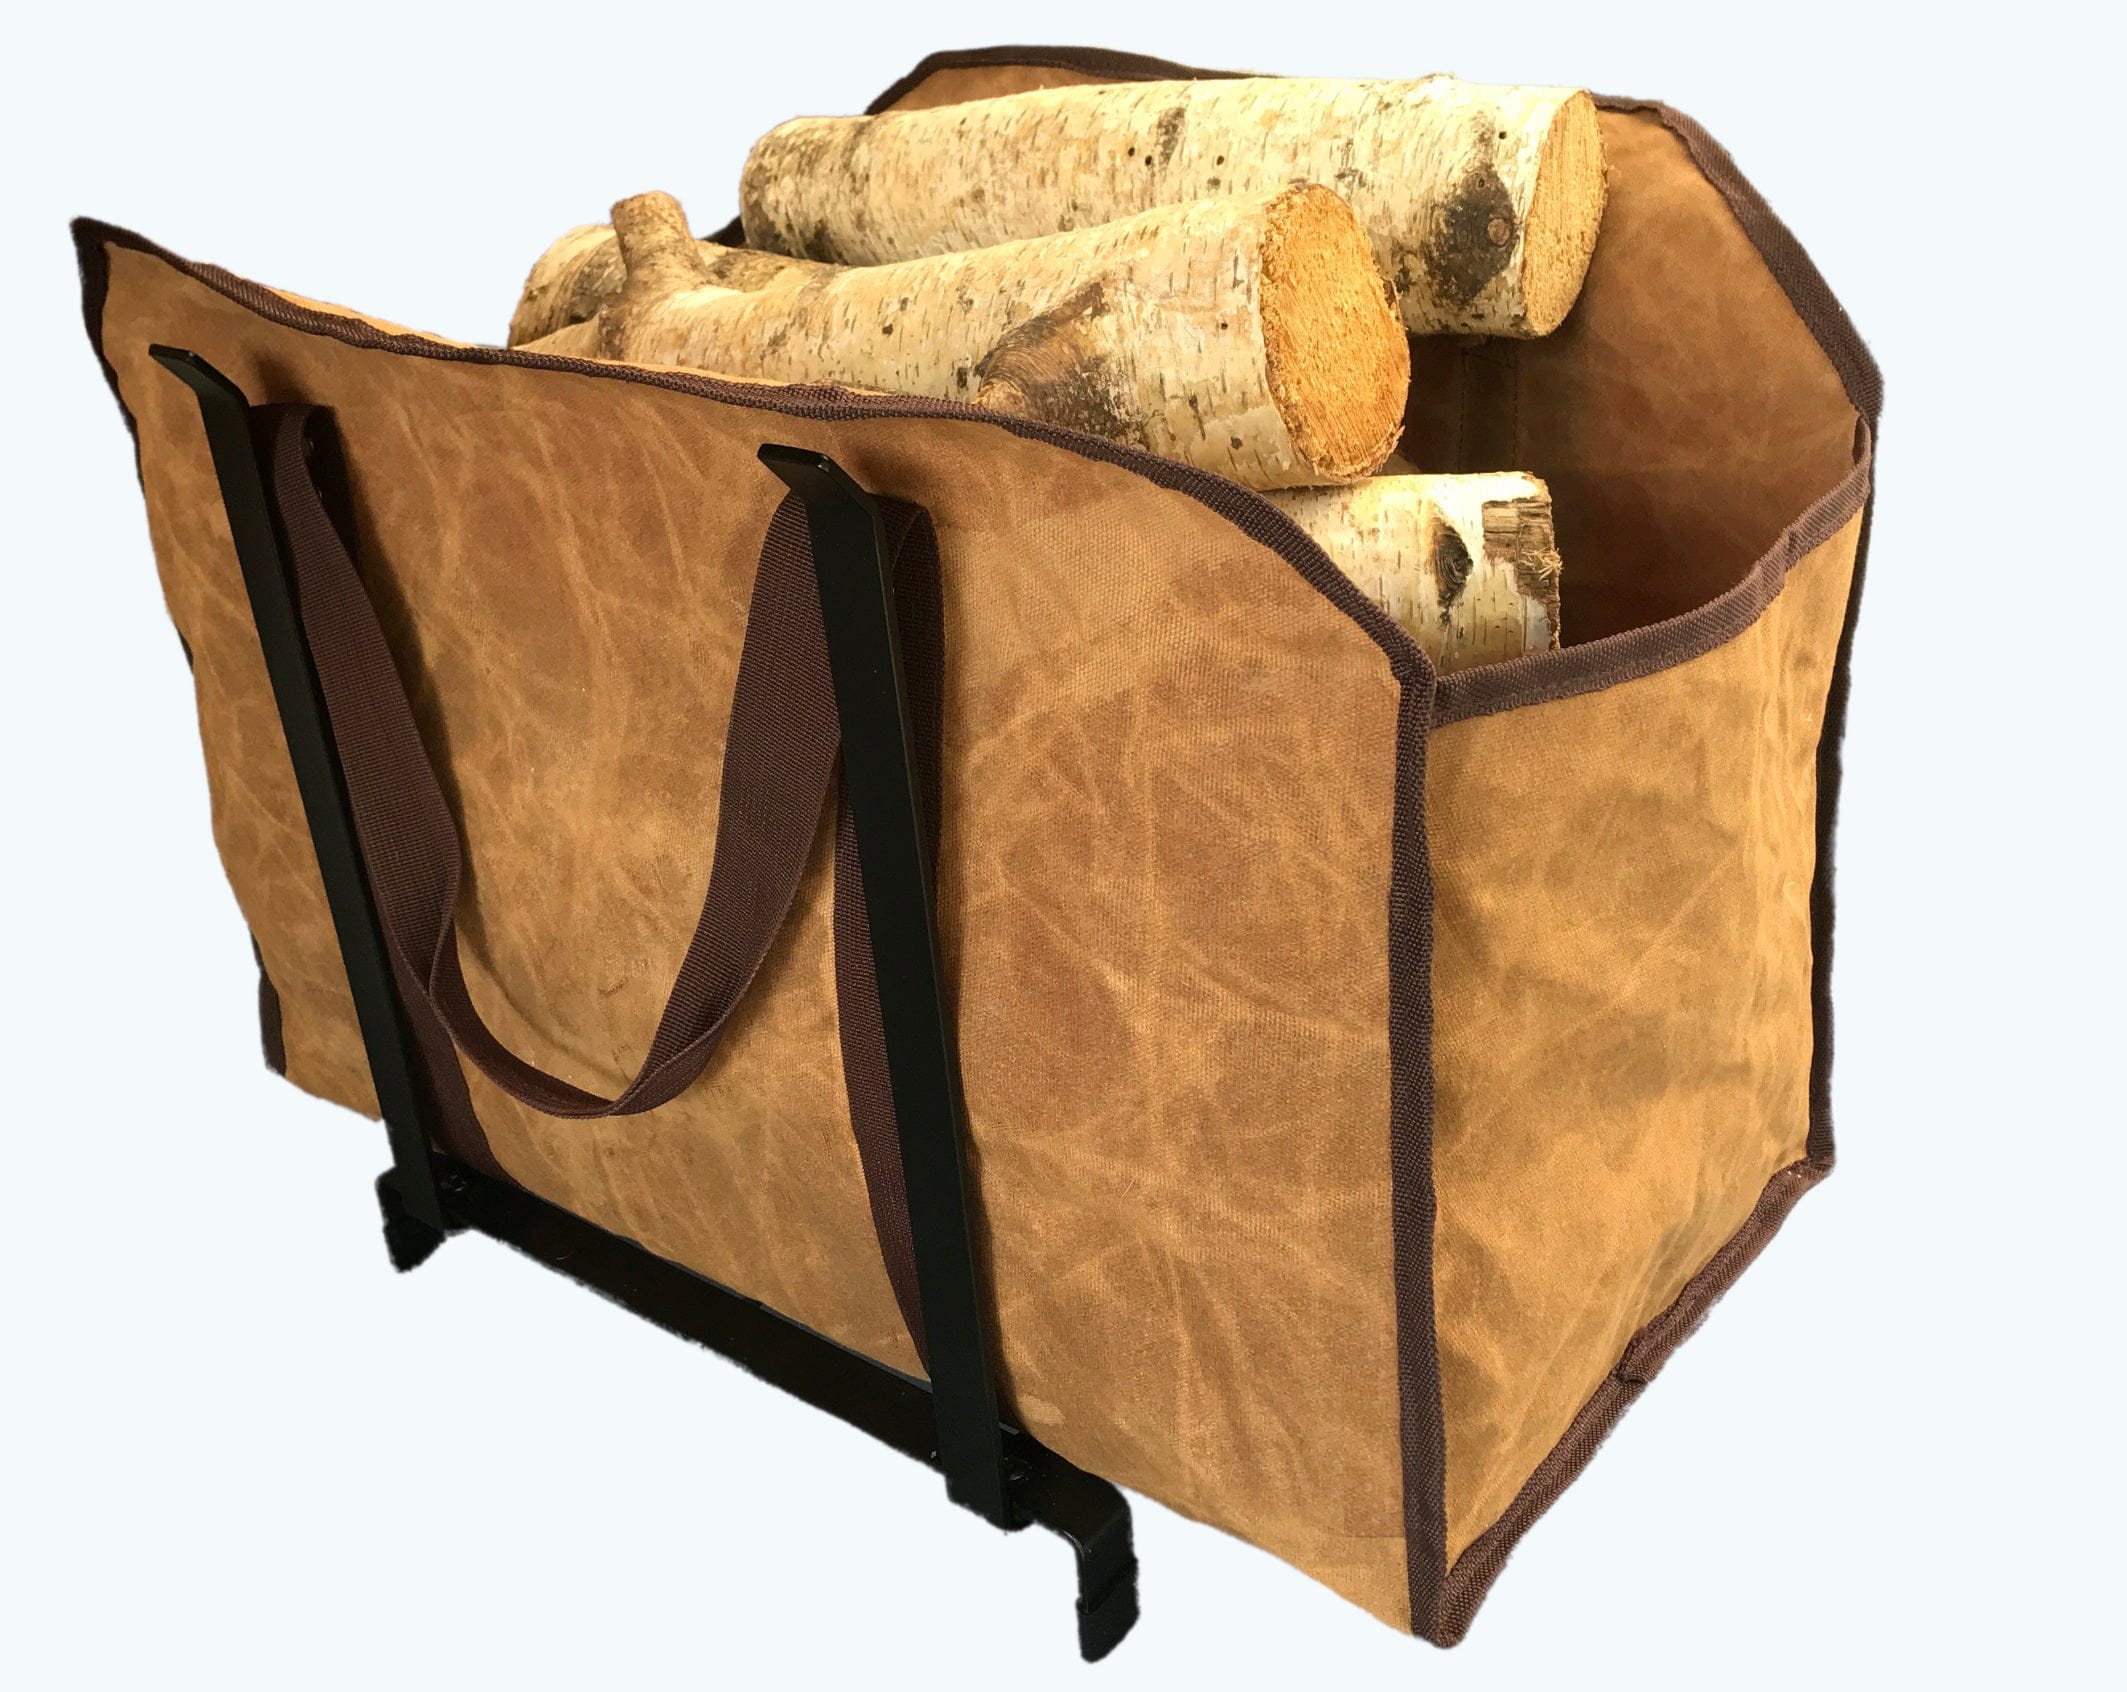 Firewood Carrier Bag and Rack BUNDLED